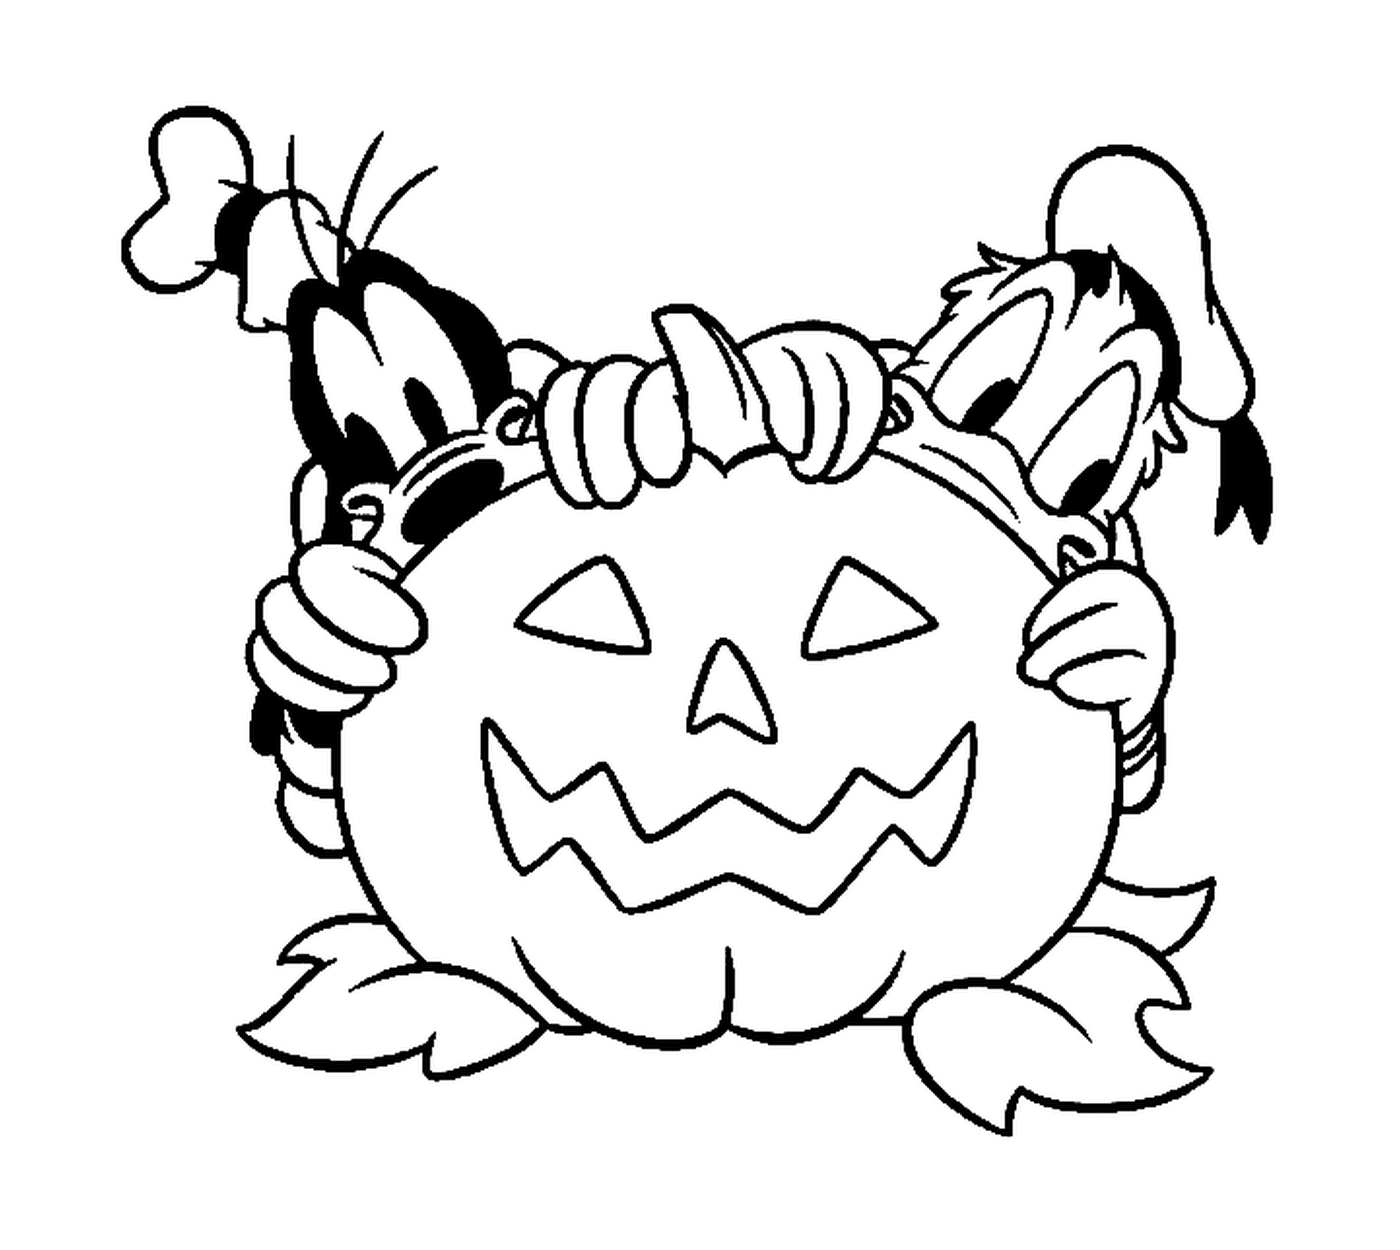  Donald e Dingo si nascondono dietro una zucca di Halloween 